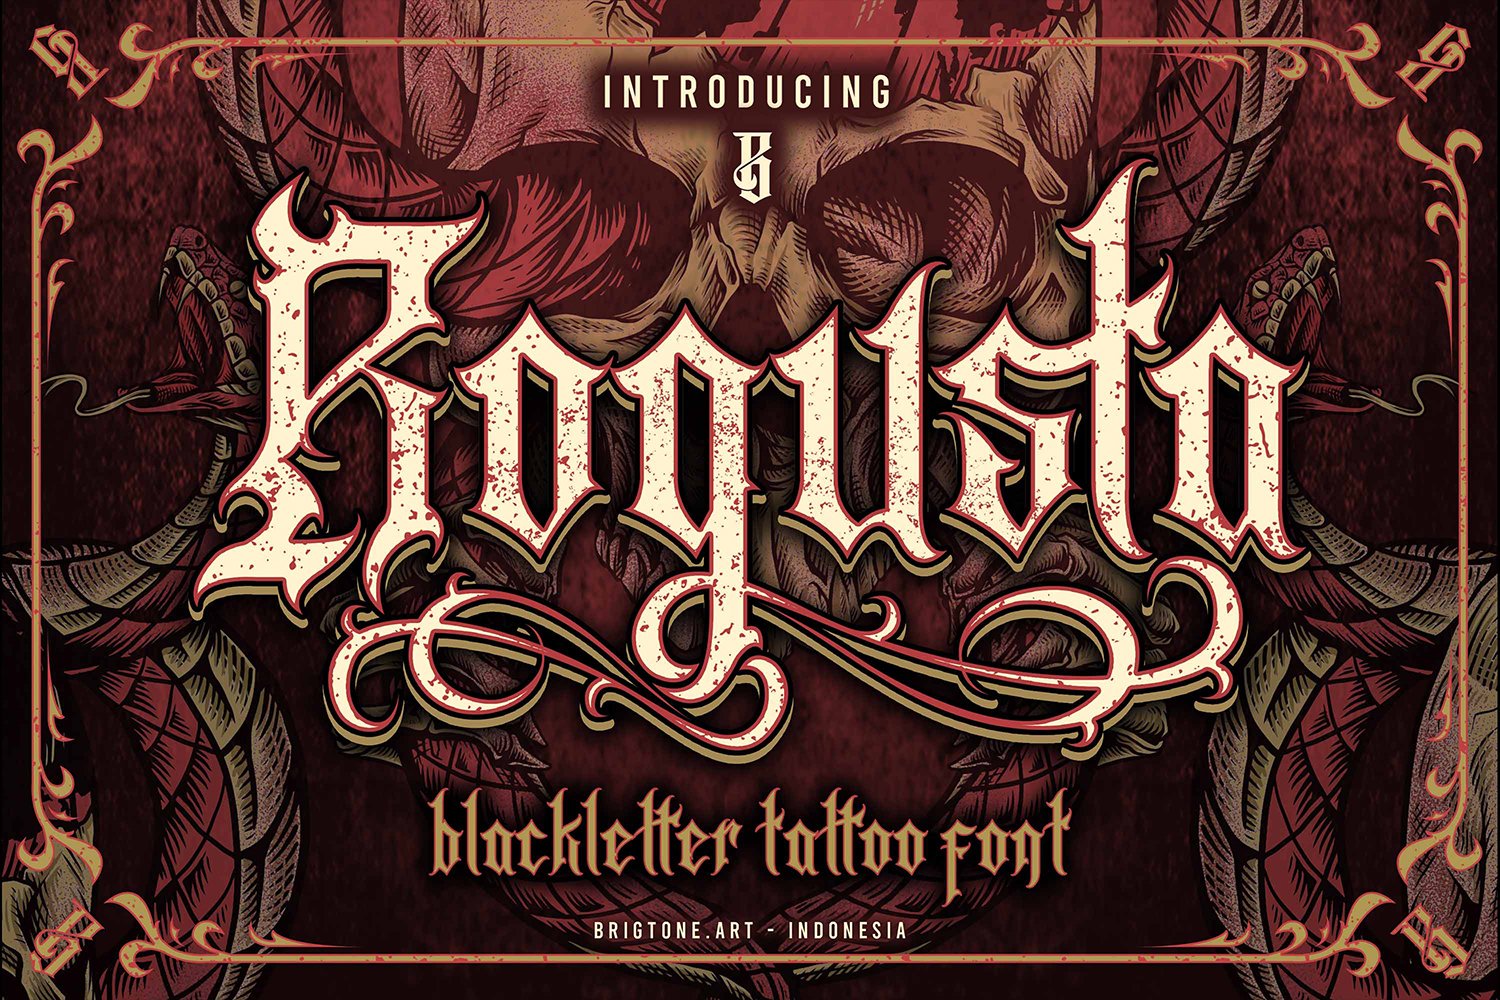 Rogusta - Blackletter Font cover image.